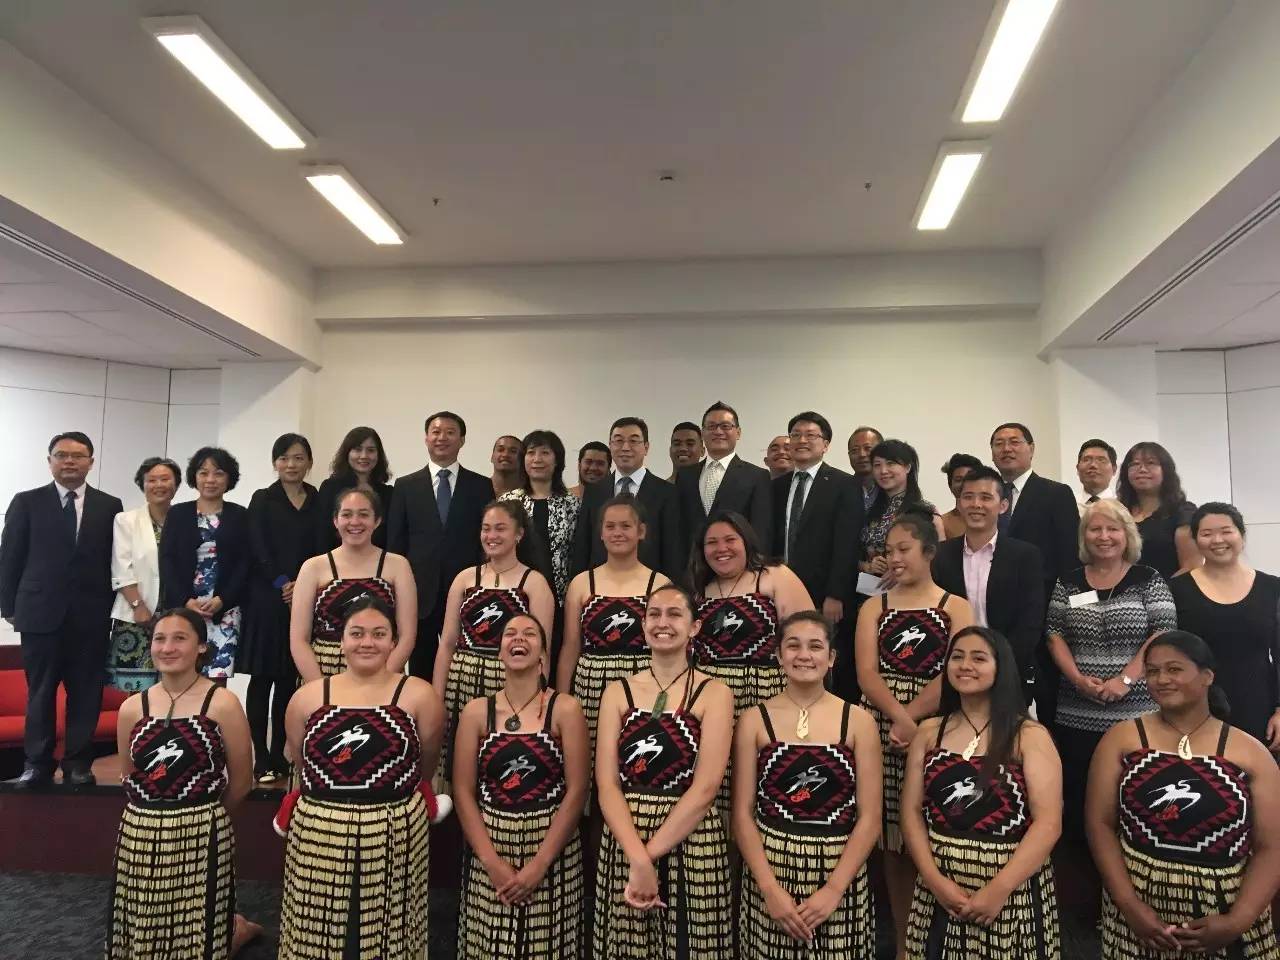 彰显中国图书魅力 加深中新友好合作 ——高教社在新西兰举办首届书展